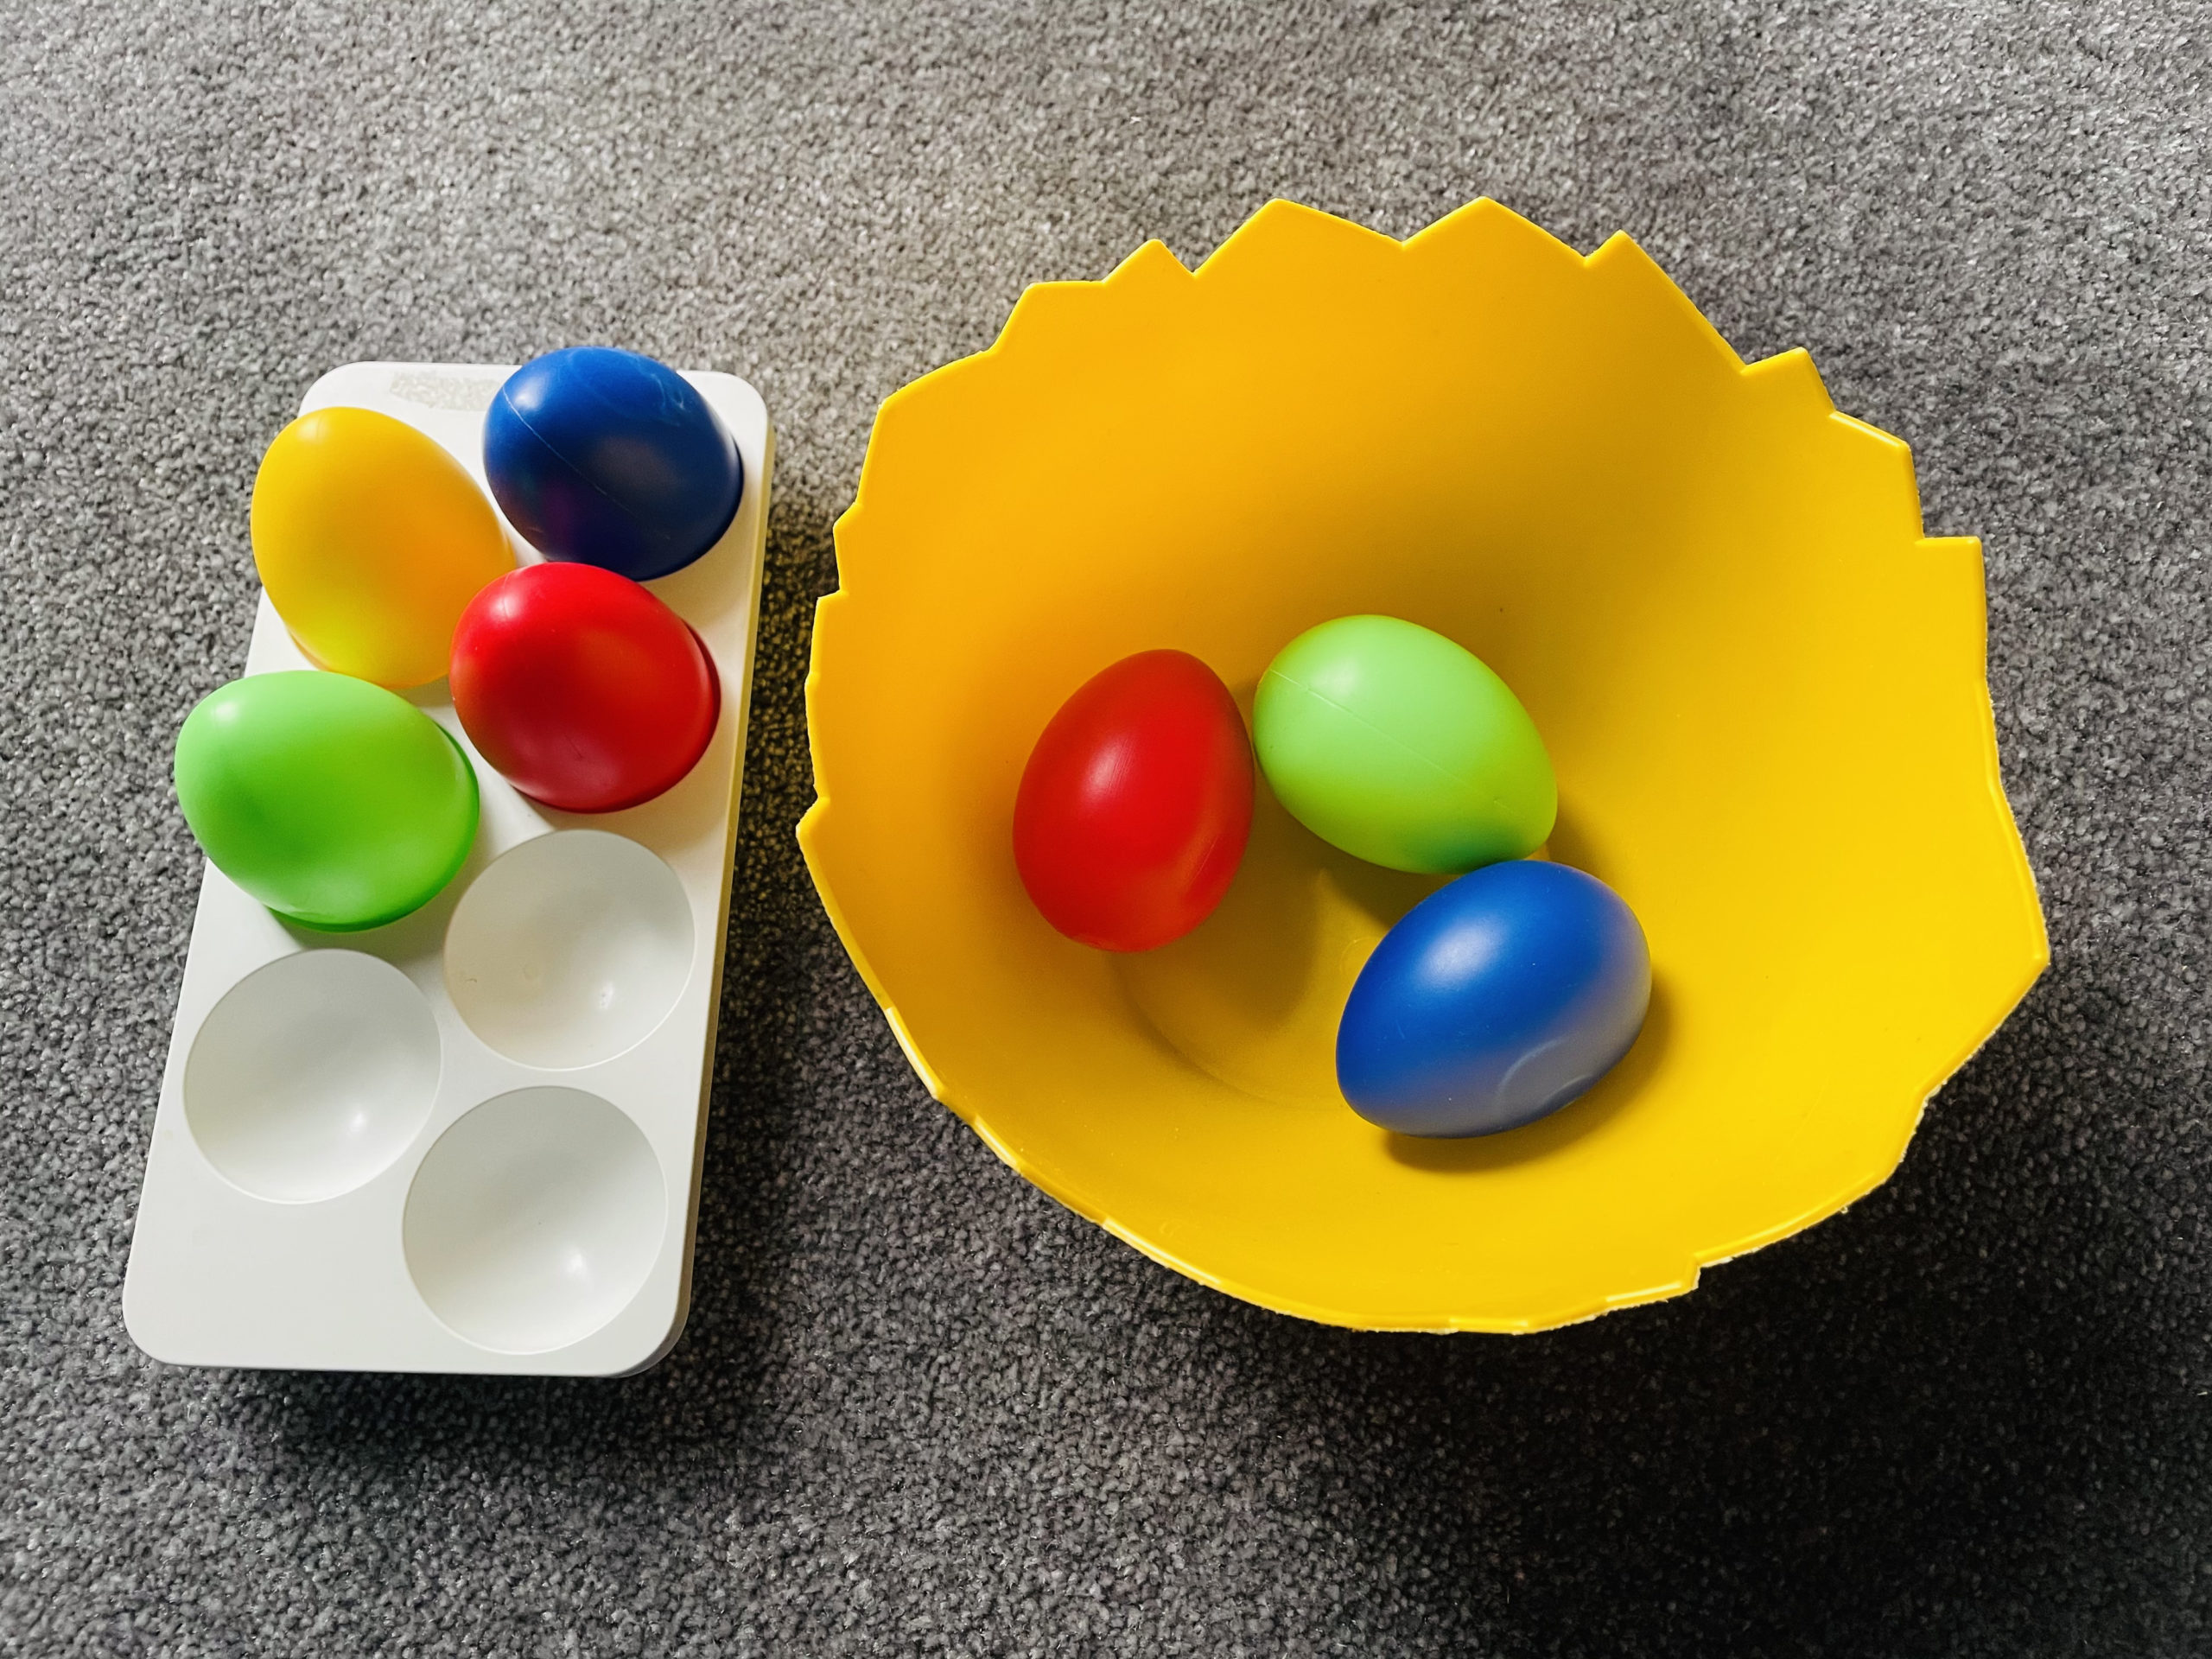 Bild zum Schritt 9 für das Bastel- und DIY-Abenteuer für Kinder: 'Nennt dem Kind die Farbe des Eies, welches es aus...'